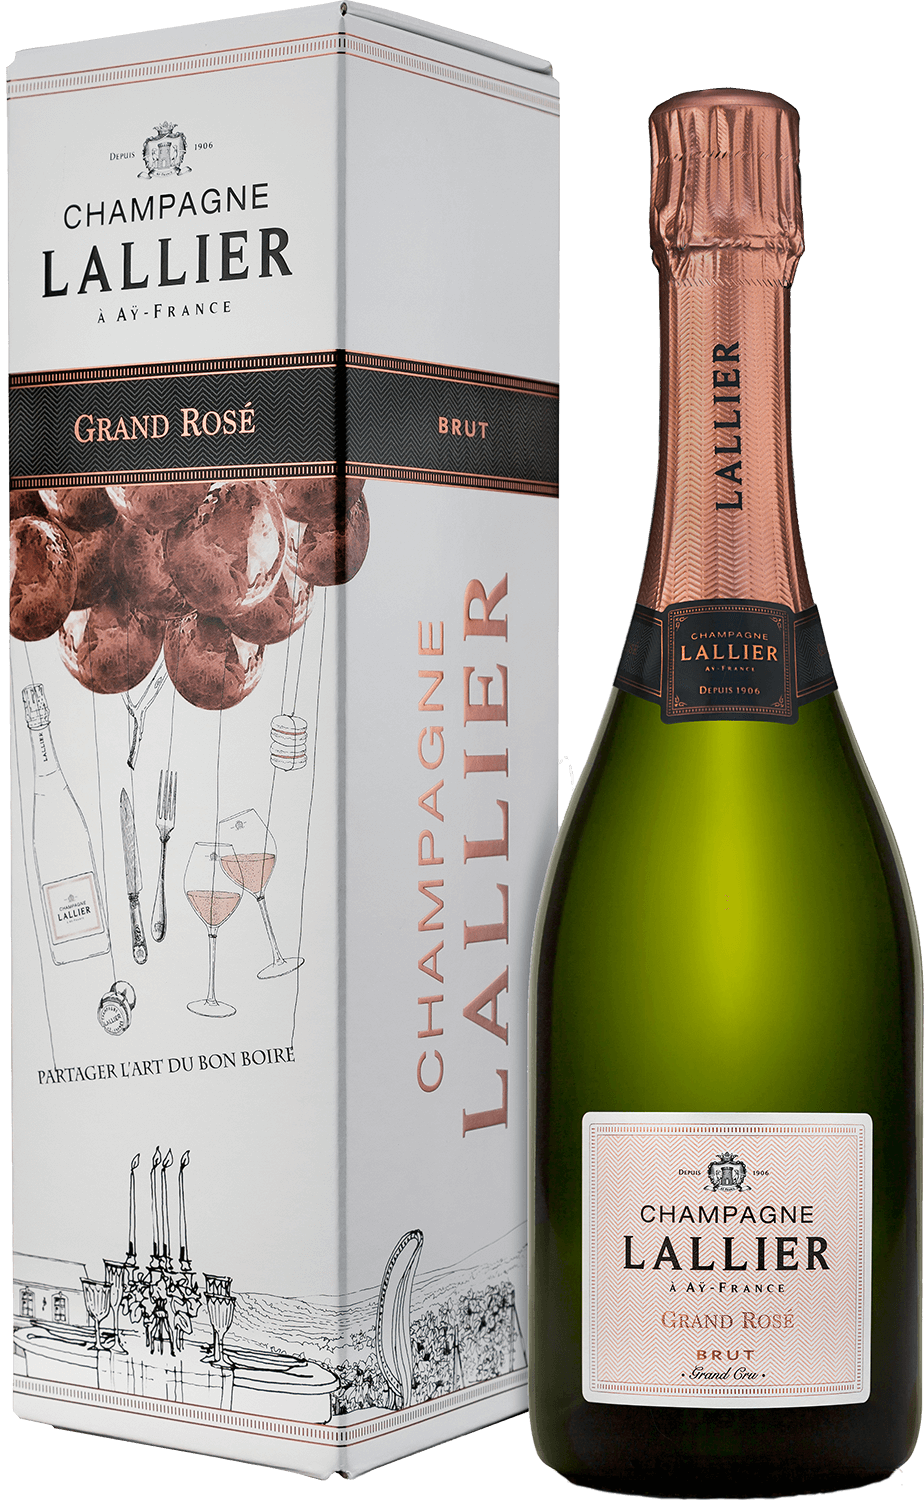 Lallier Grand Rose Brut Grand Cru Champagne AOC (gift box) vilmart grand cellier d or brut premier cru champagne aoc